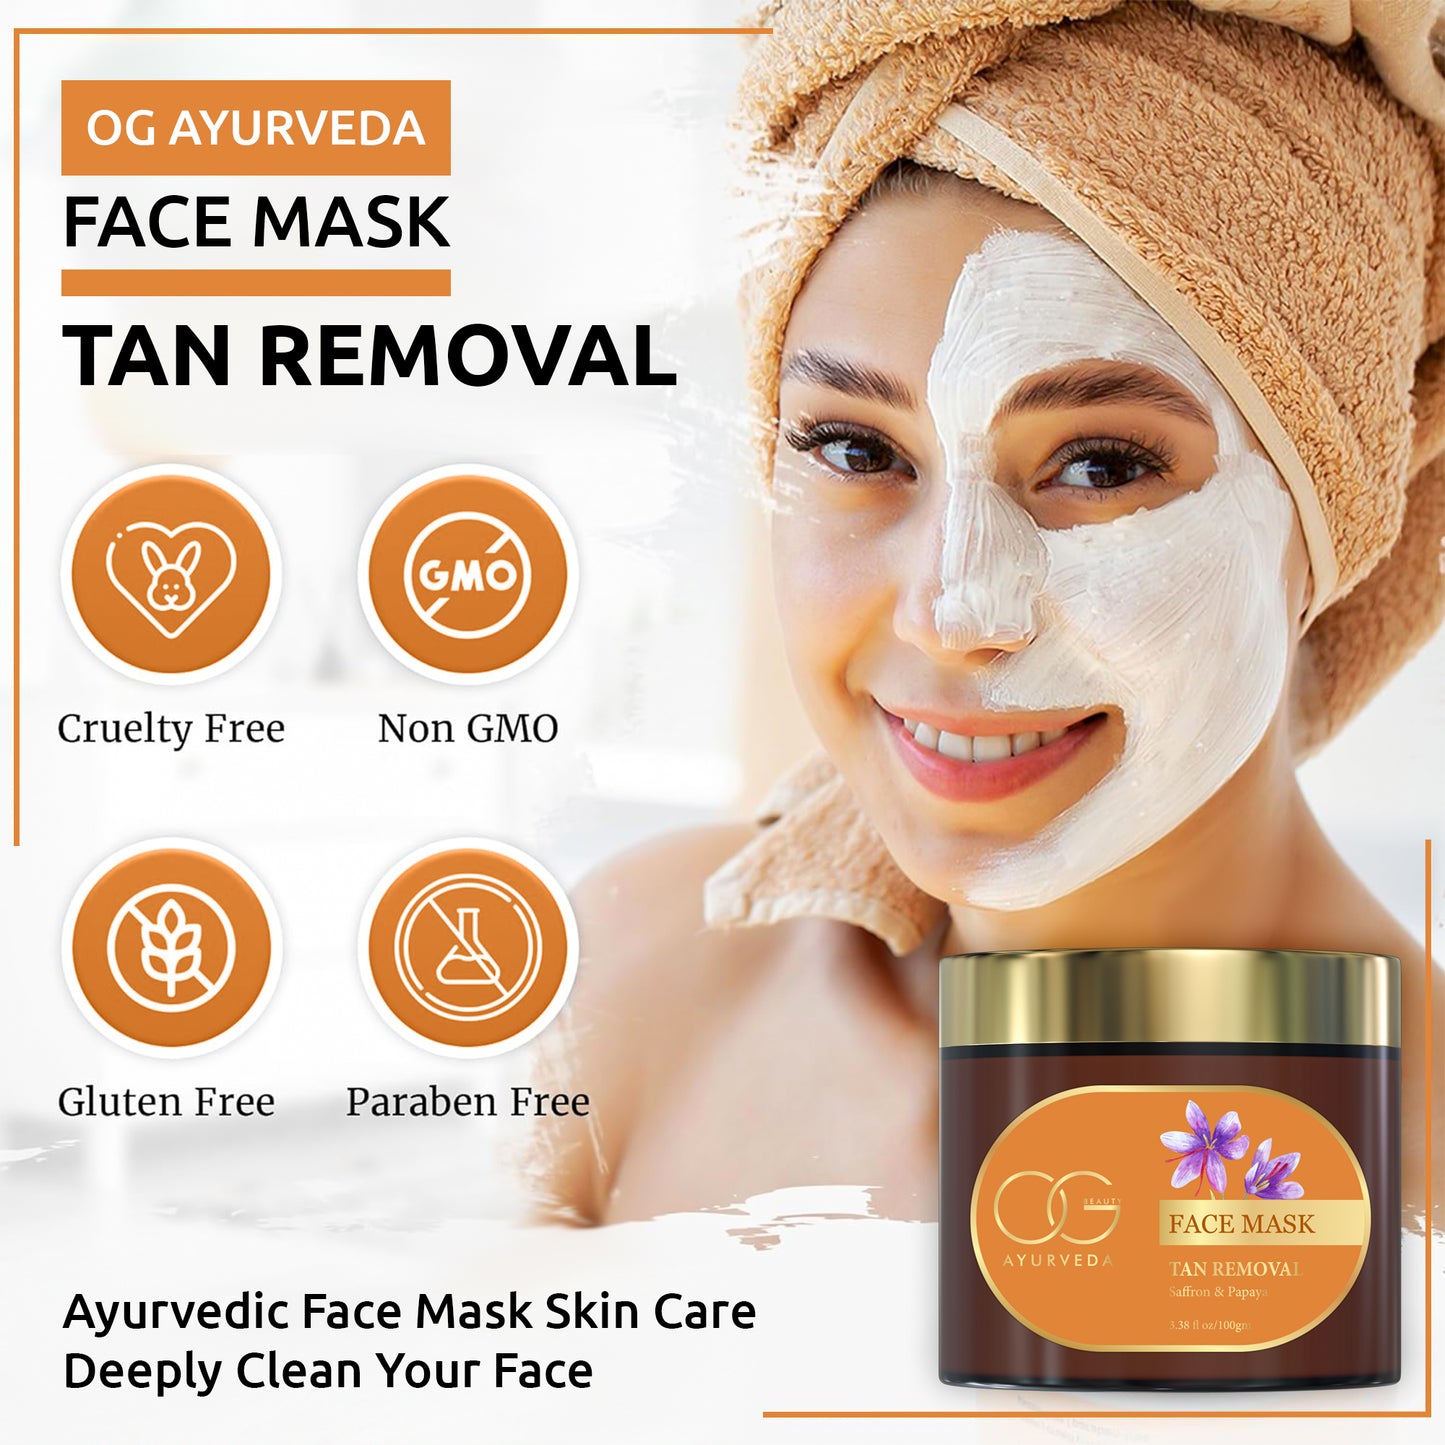 OG BEAUTY AYURVEDA Tan Removal Saffron & Papaya Face Mask 100 GM